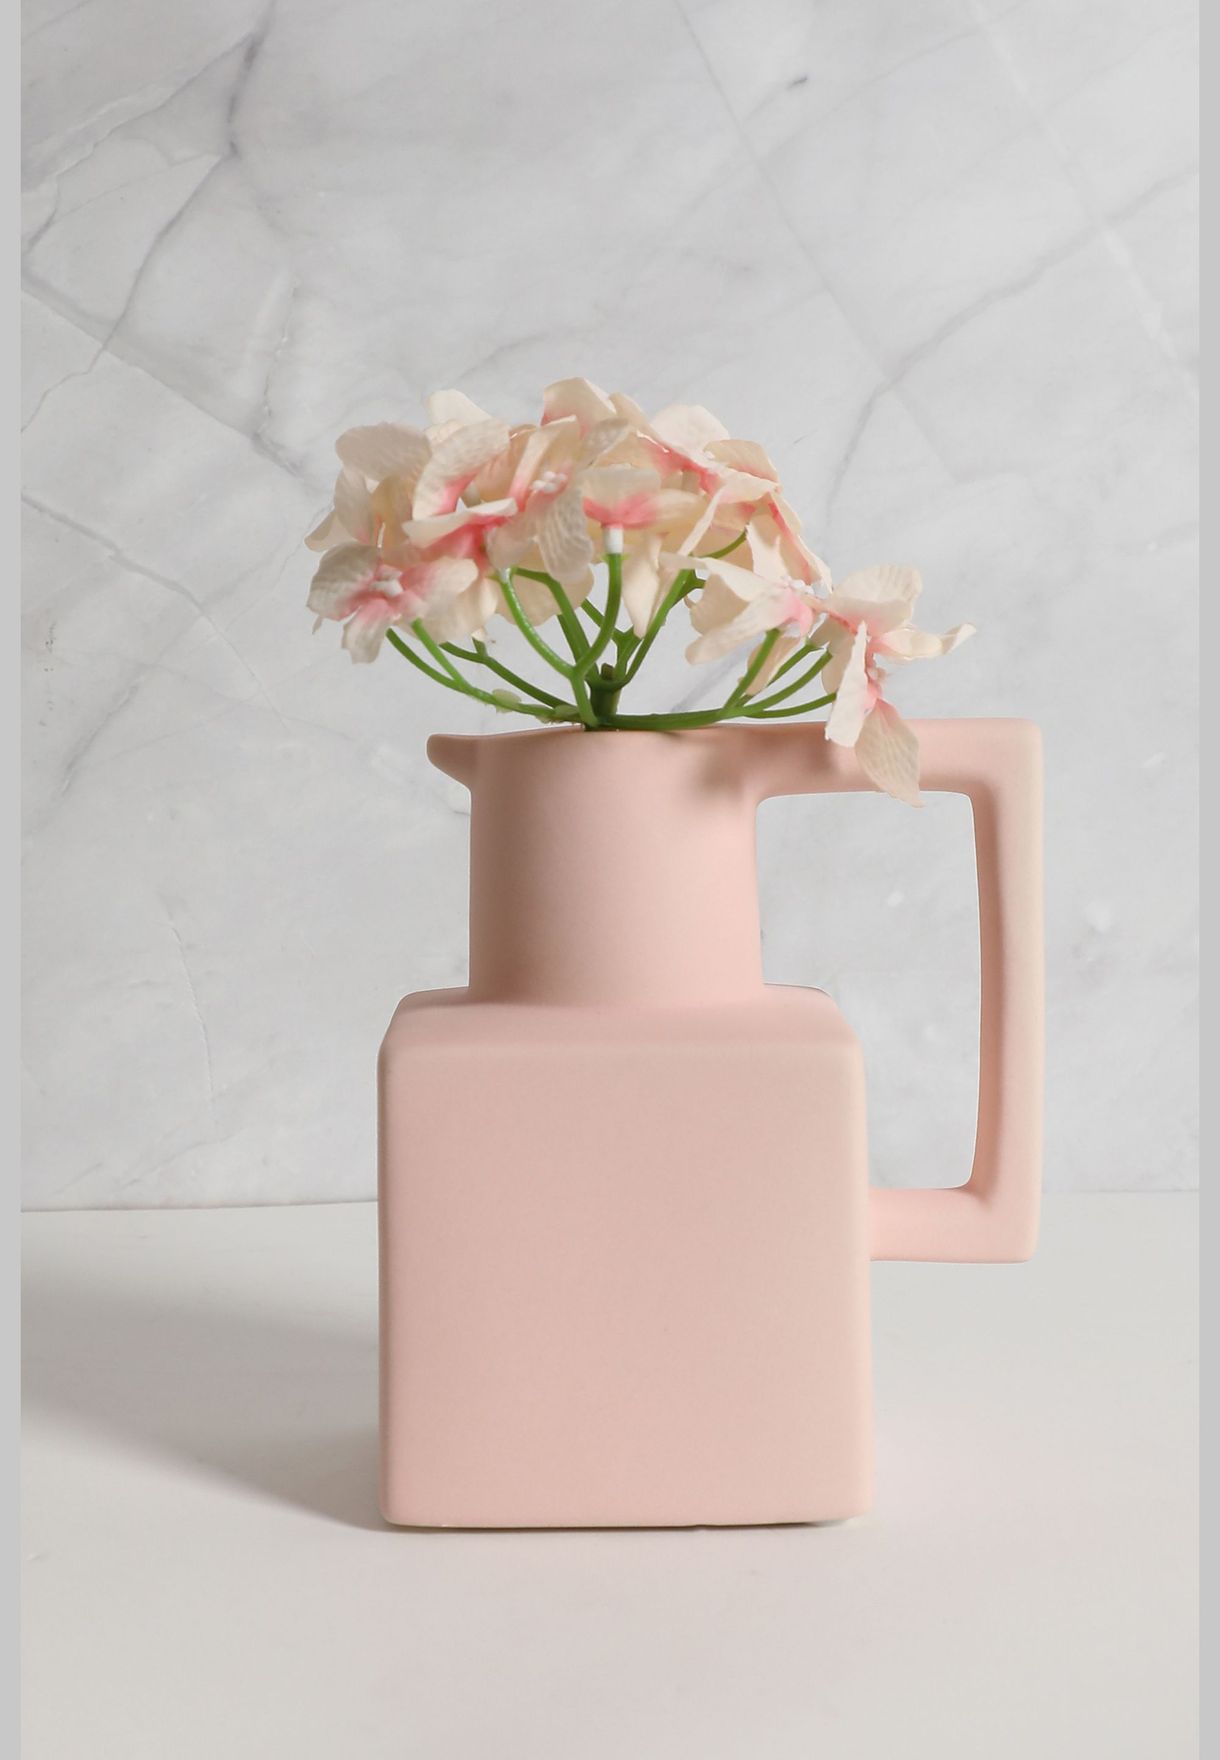 Mug Shaped Modern Ceramic Flower Vase For Home Decor 